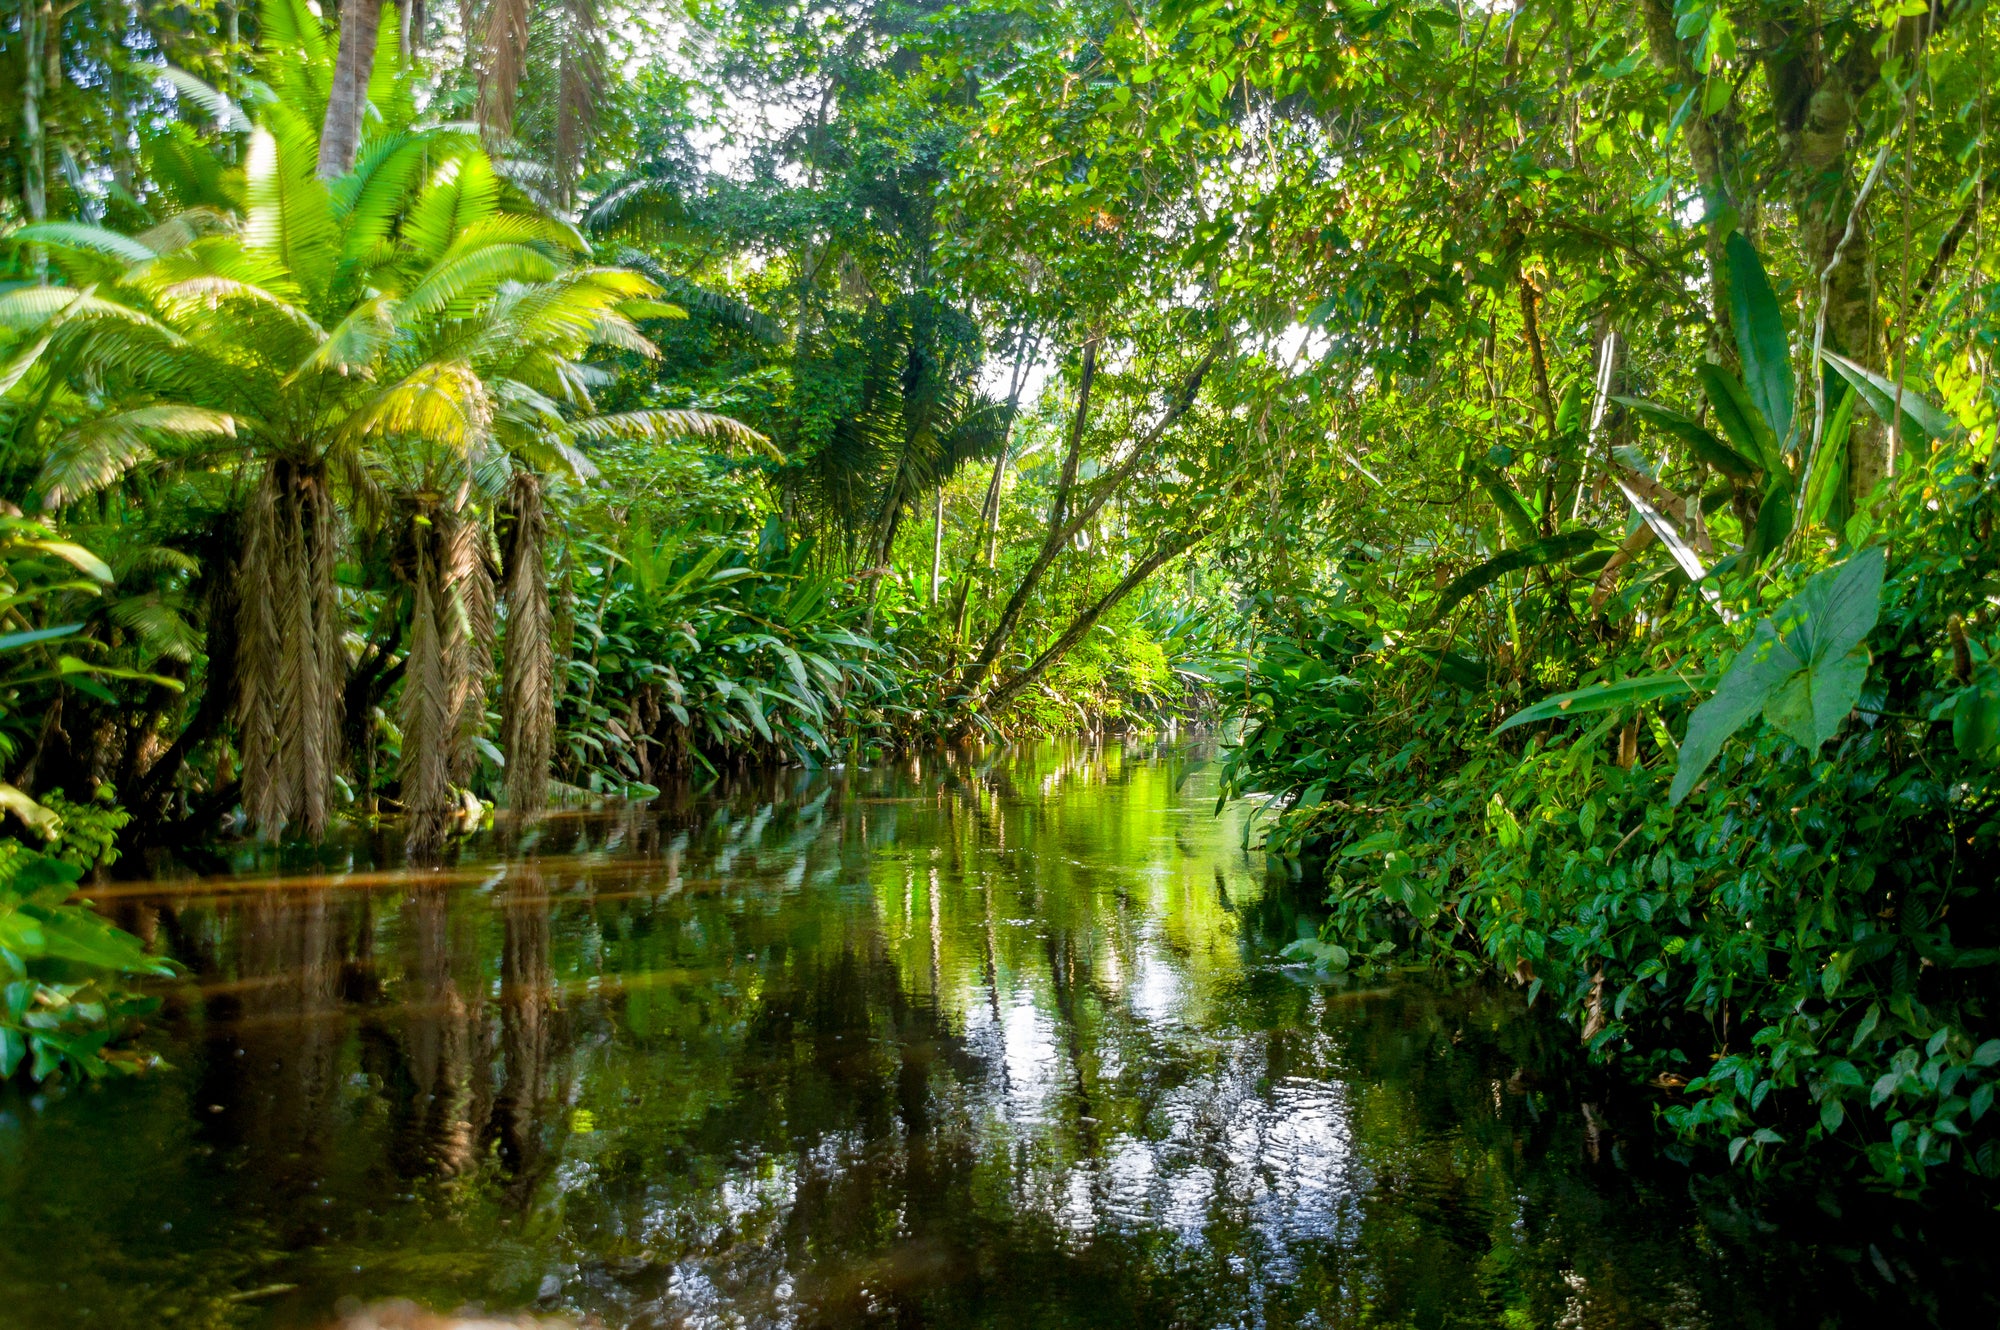 Tiga negara menandatangani pakta untuk melindungi hutan hujan